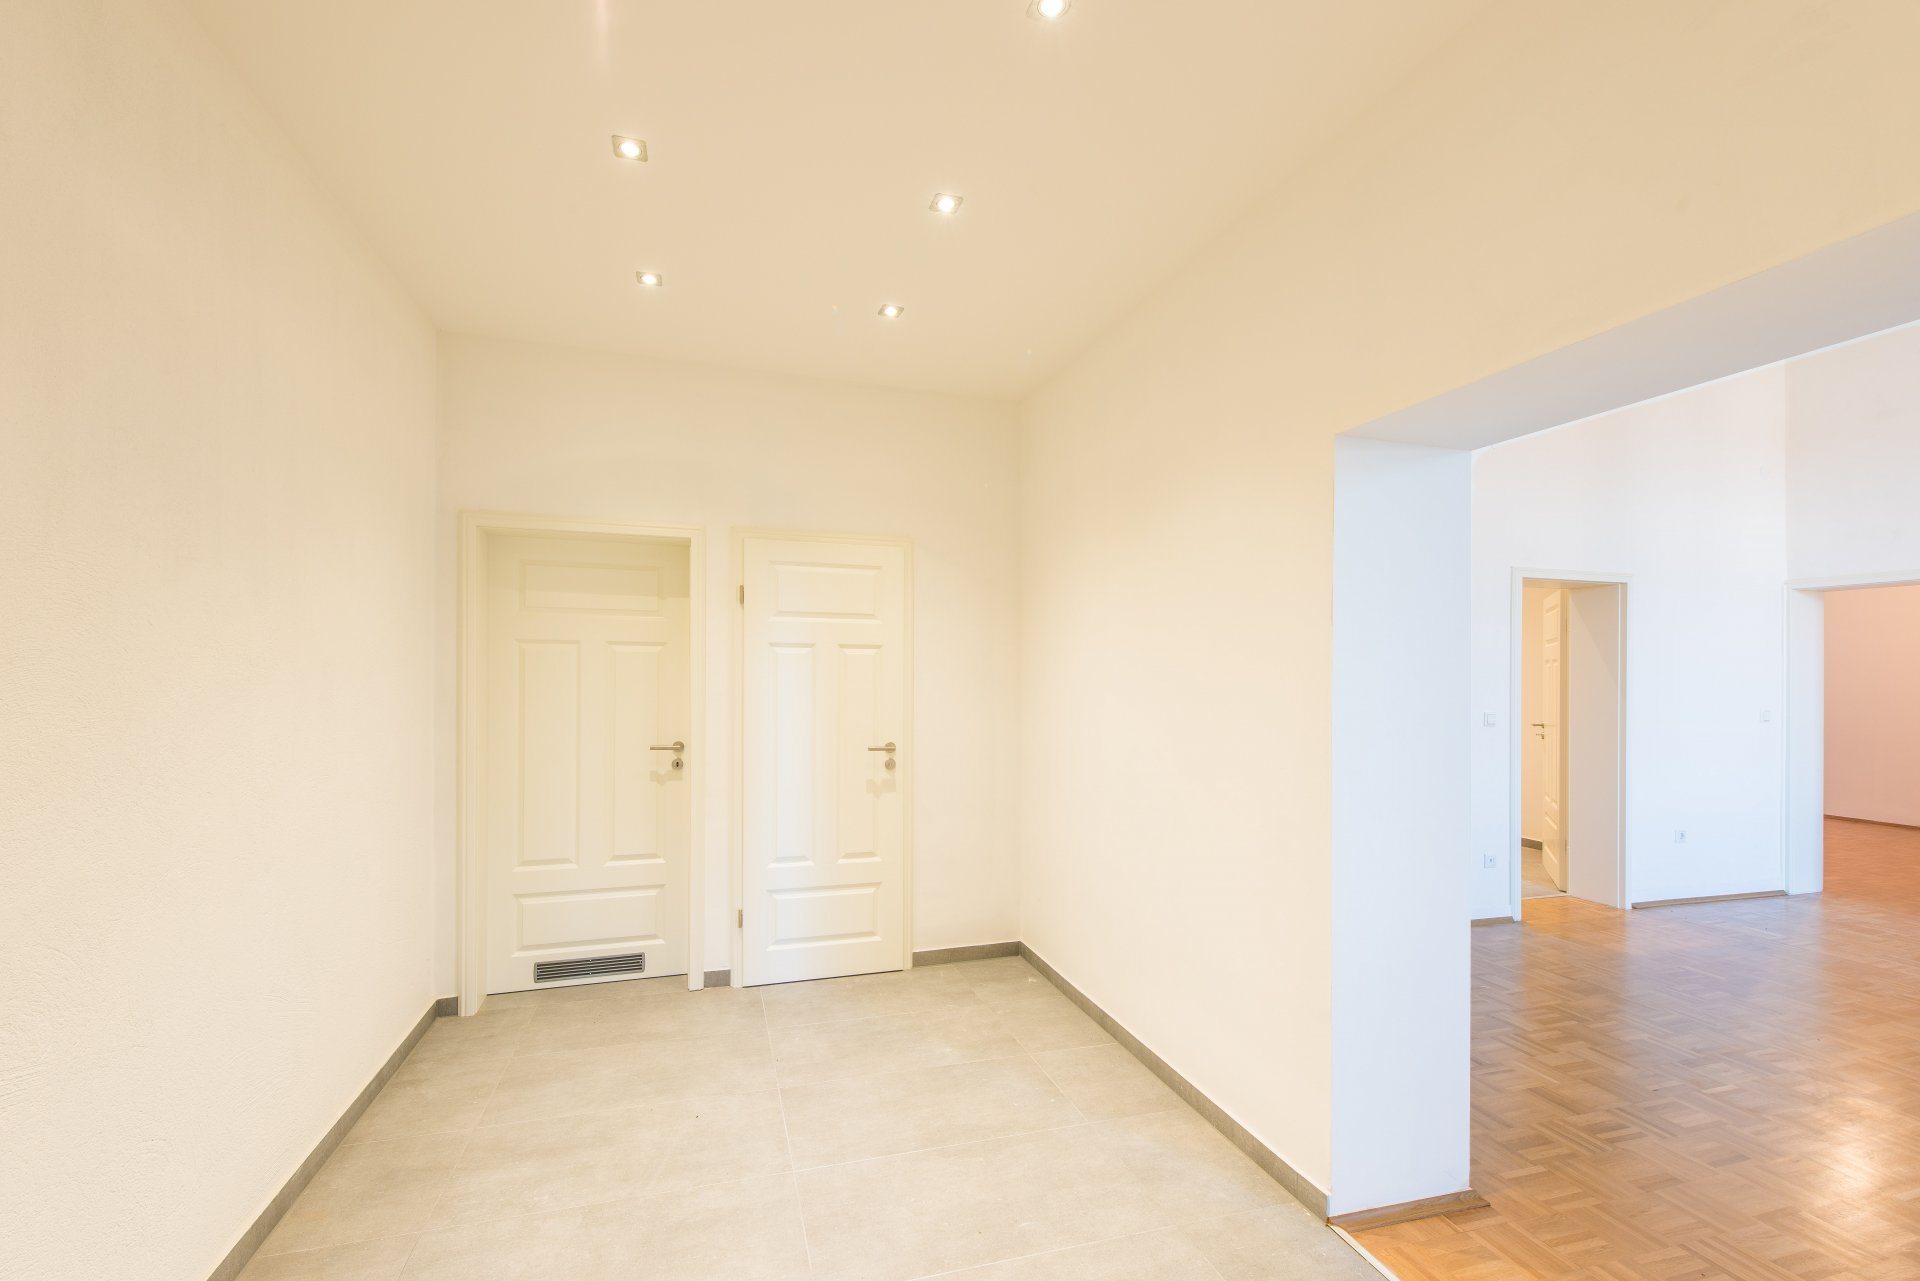 Eingangsbereich mit Gäste WC und Hauswirtschaftsraum. In der Decke LED Spots - Oliver Reifferscheid - Immobilienmakler Darmstadt